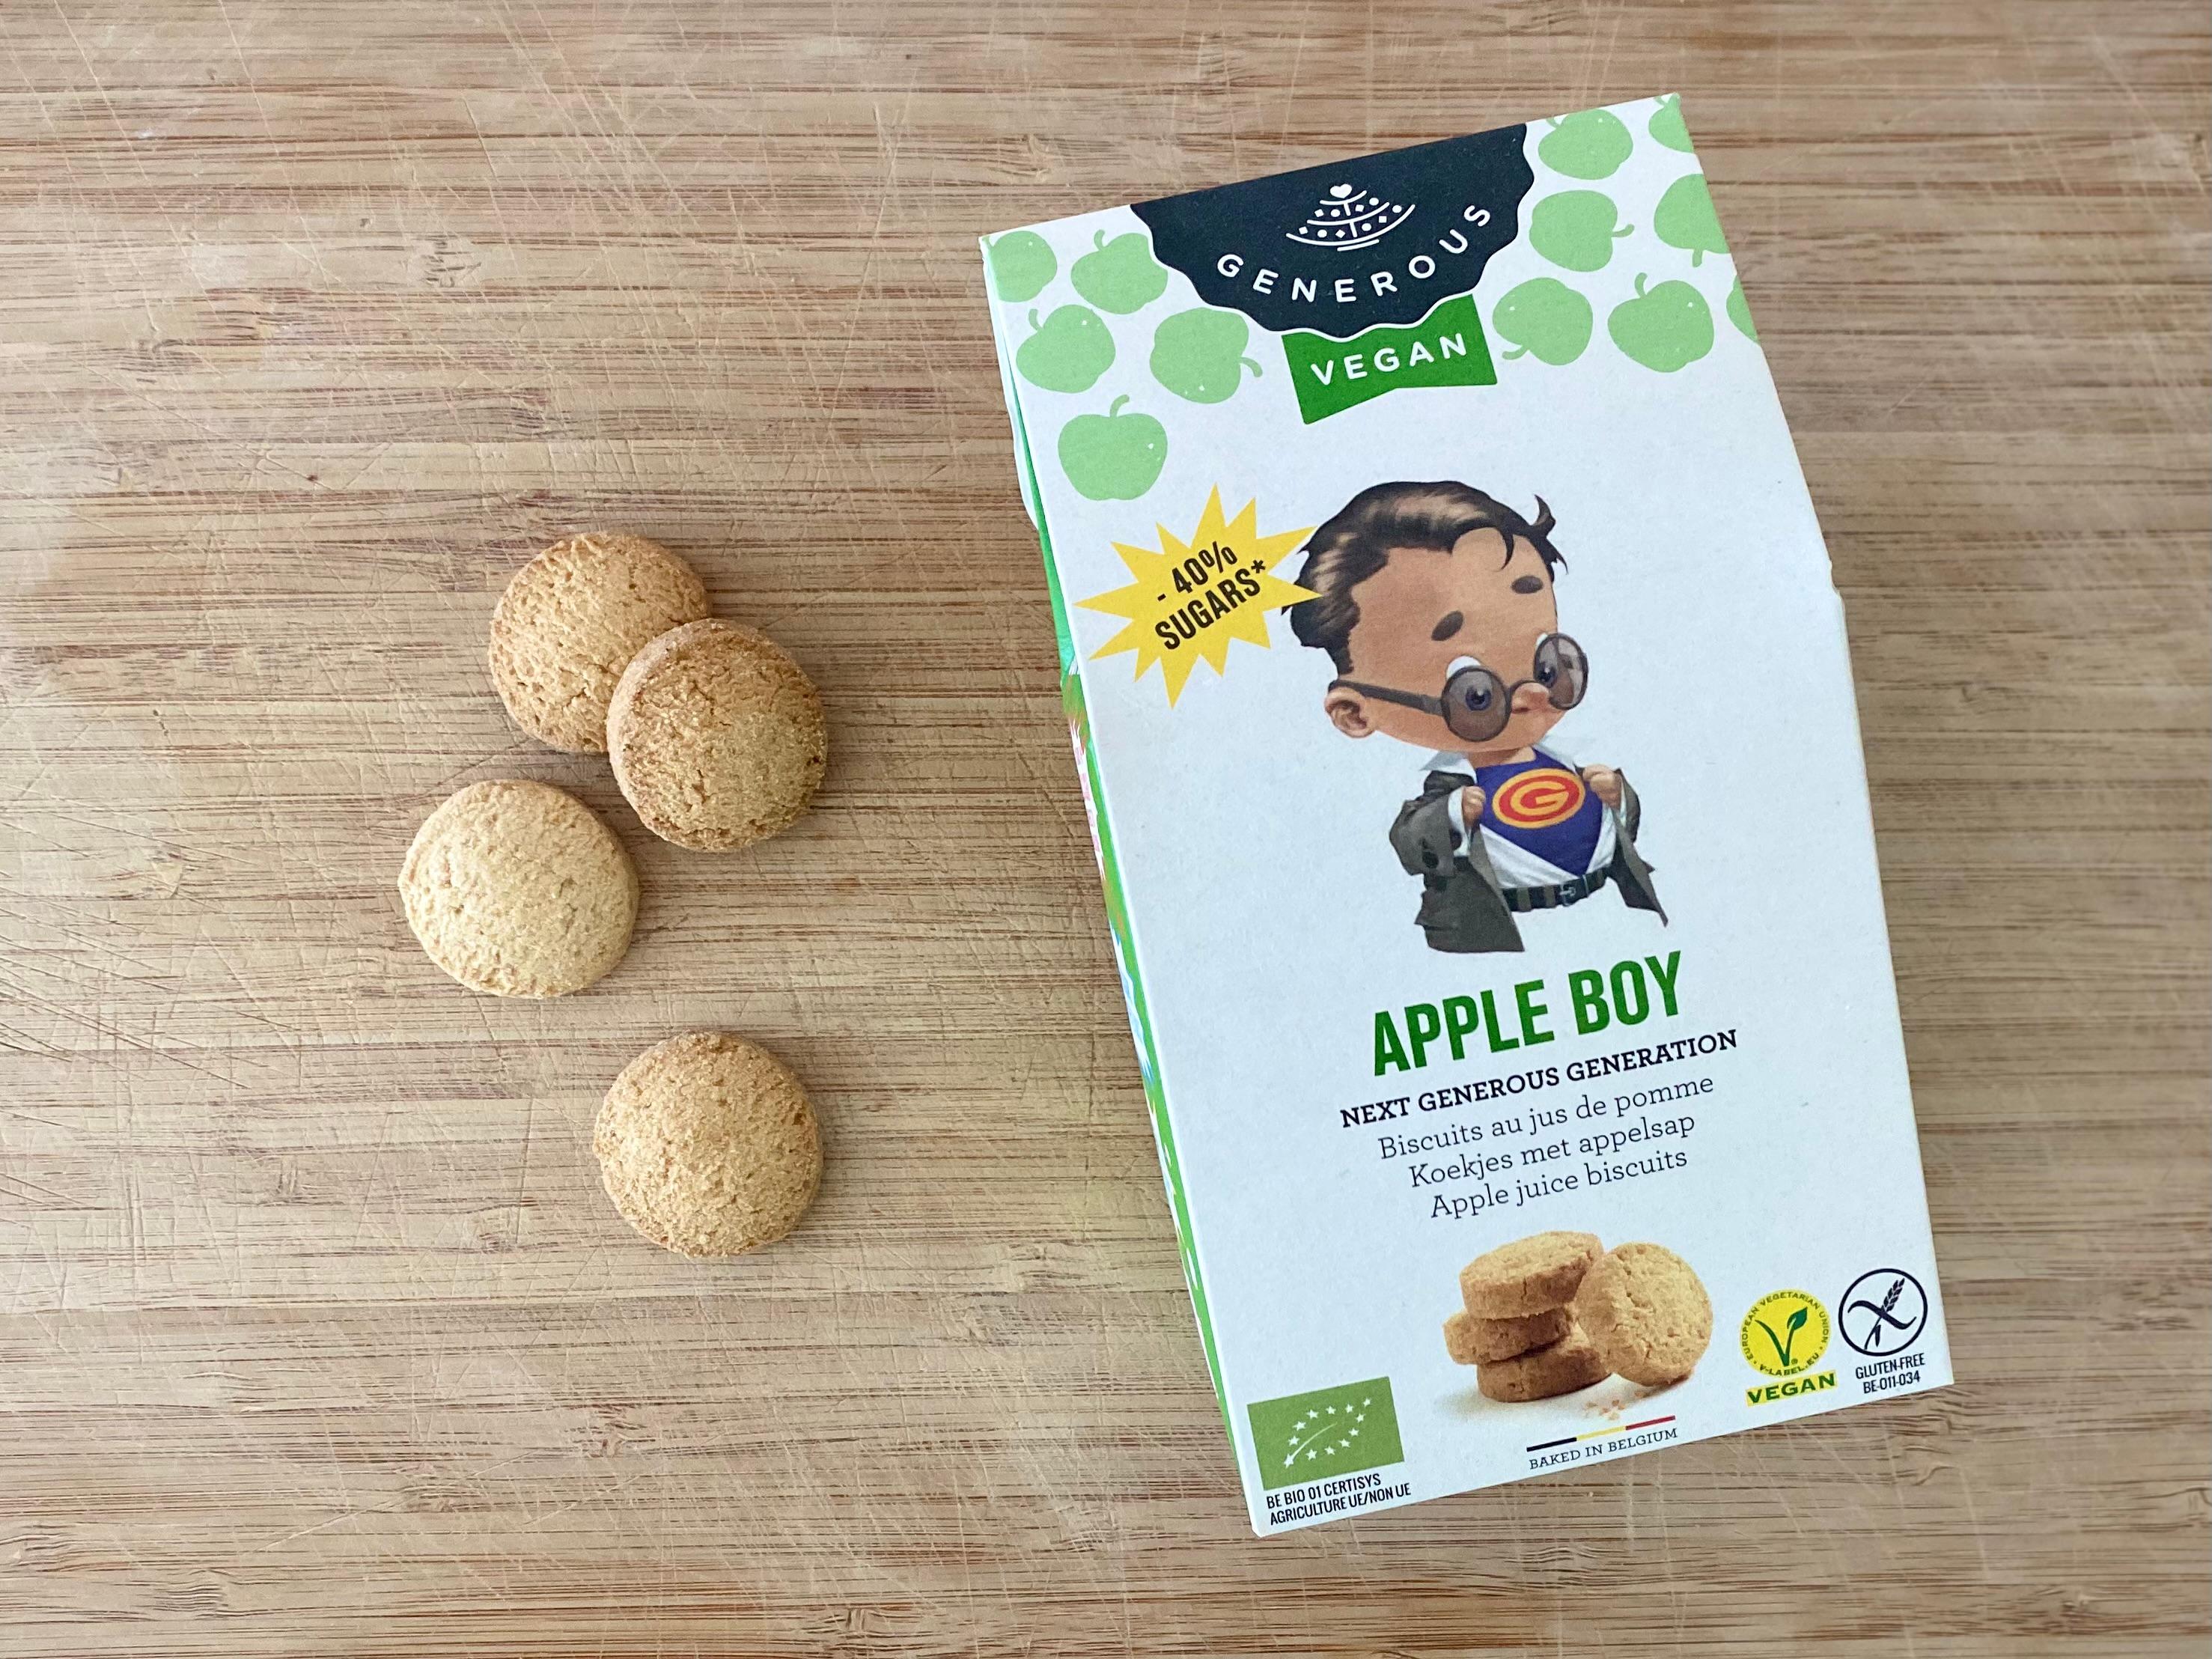 Biscuit au jus de pomme "Apple boy", sans gluten